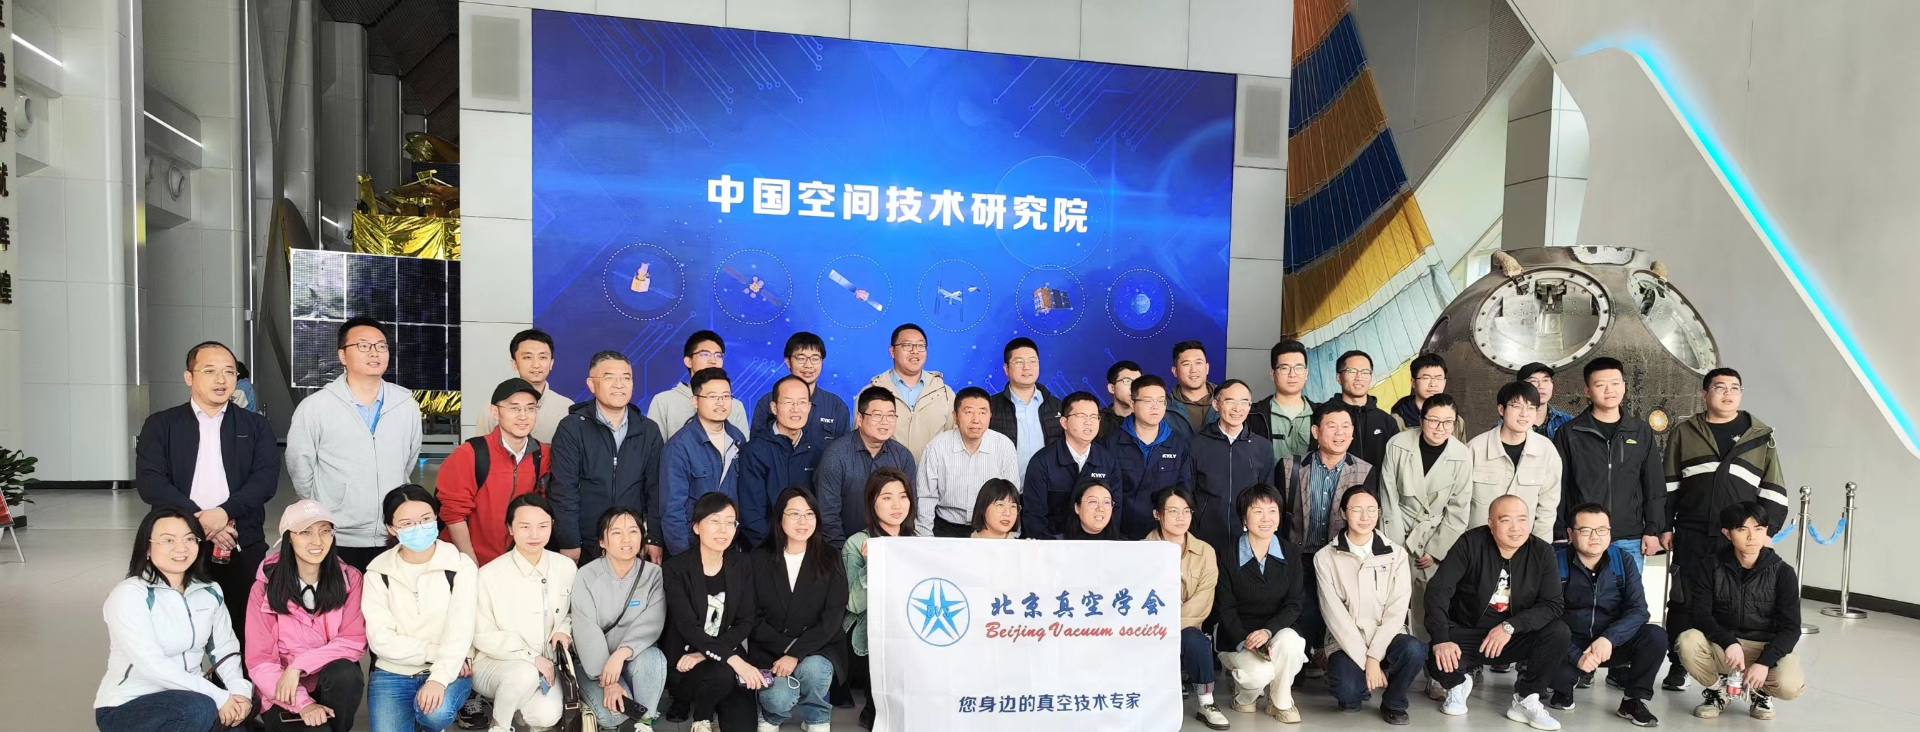 北京真空学会组织会员参观航天城